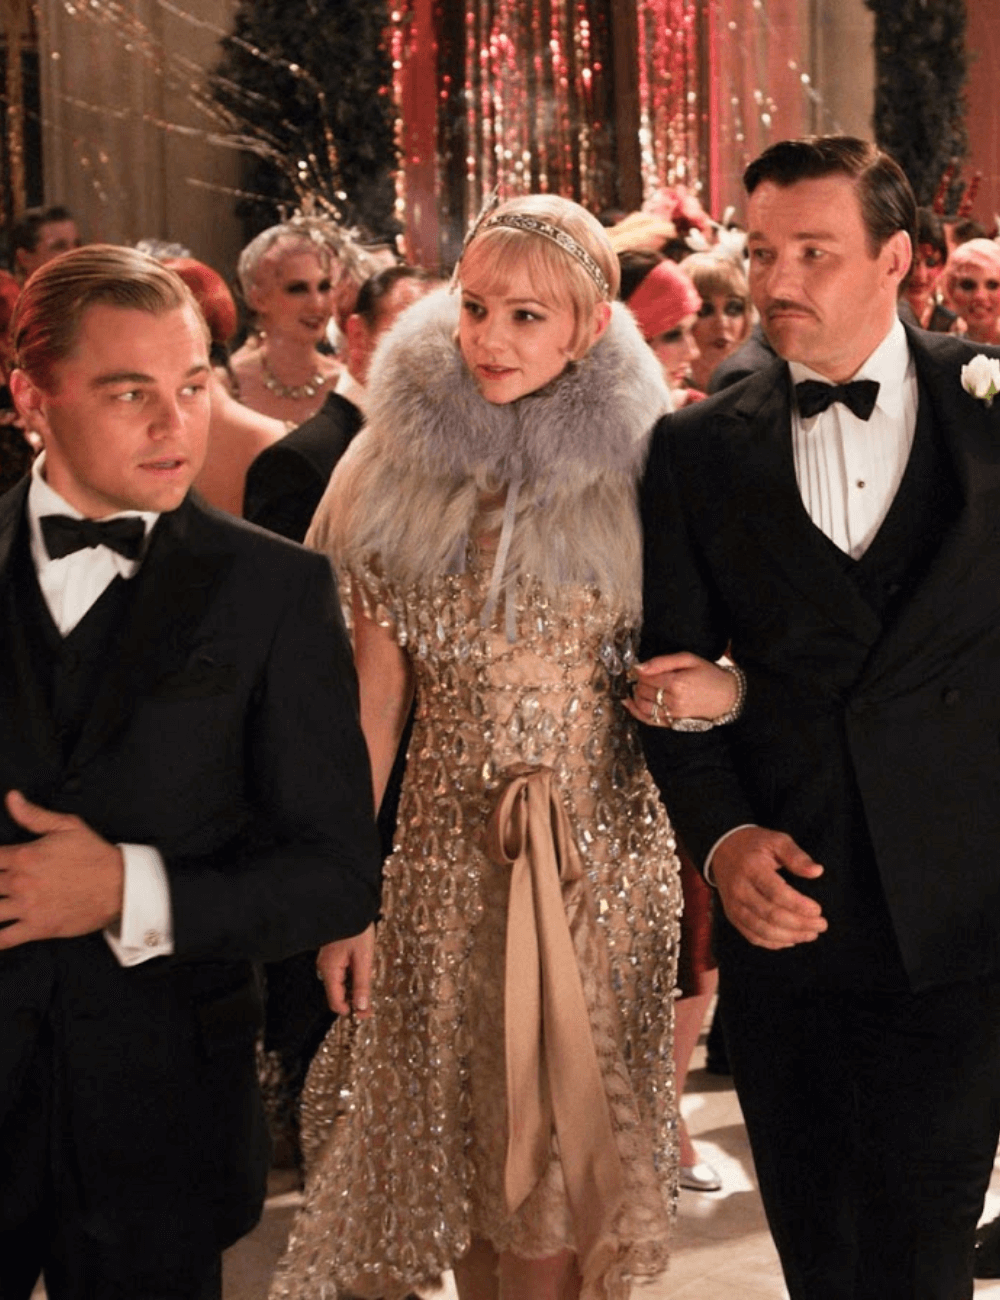 O Grande Gatsby - roupas diversas - figurinos mais emblemáticos - inverno - a foto mostra dois homens e uma mulher andando por um salão - https://stealthelook.com.br